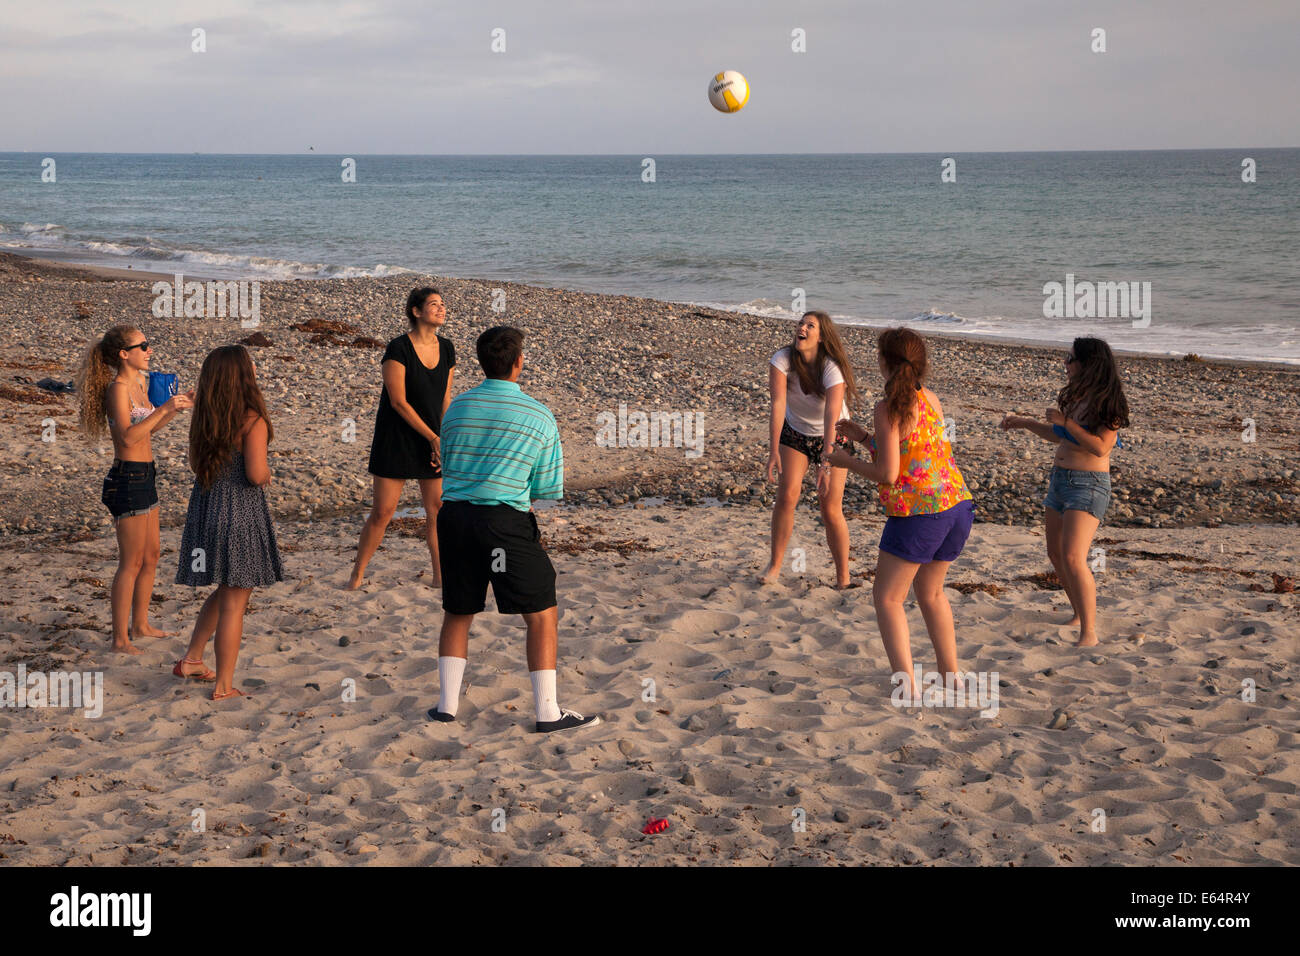 Les jeunes adultes jouer volley ball sur la plage, Dana Point, Californie, USA Banque D'Images